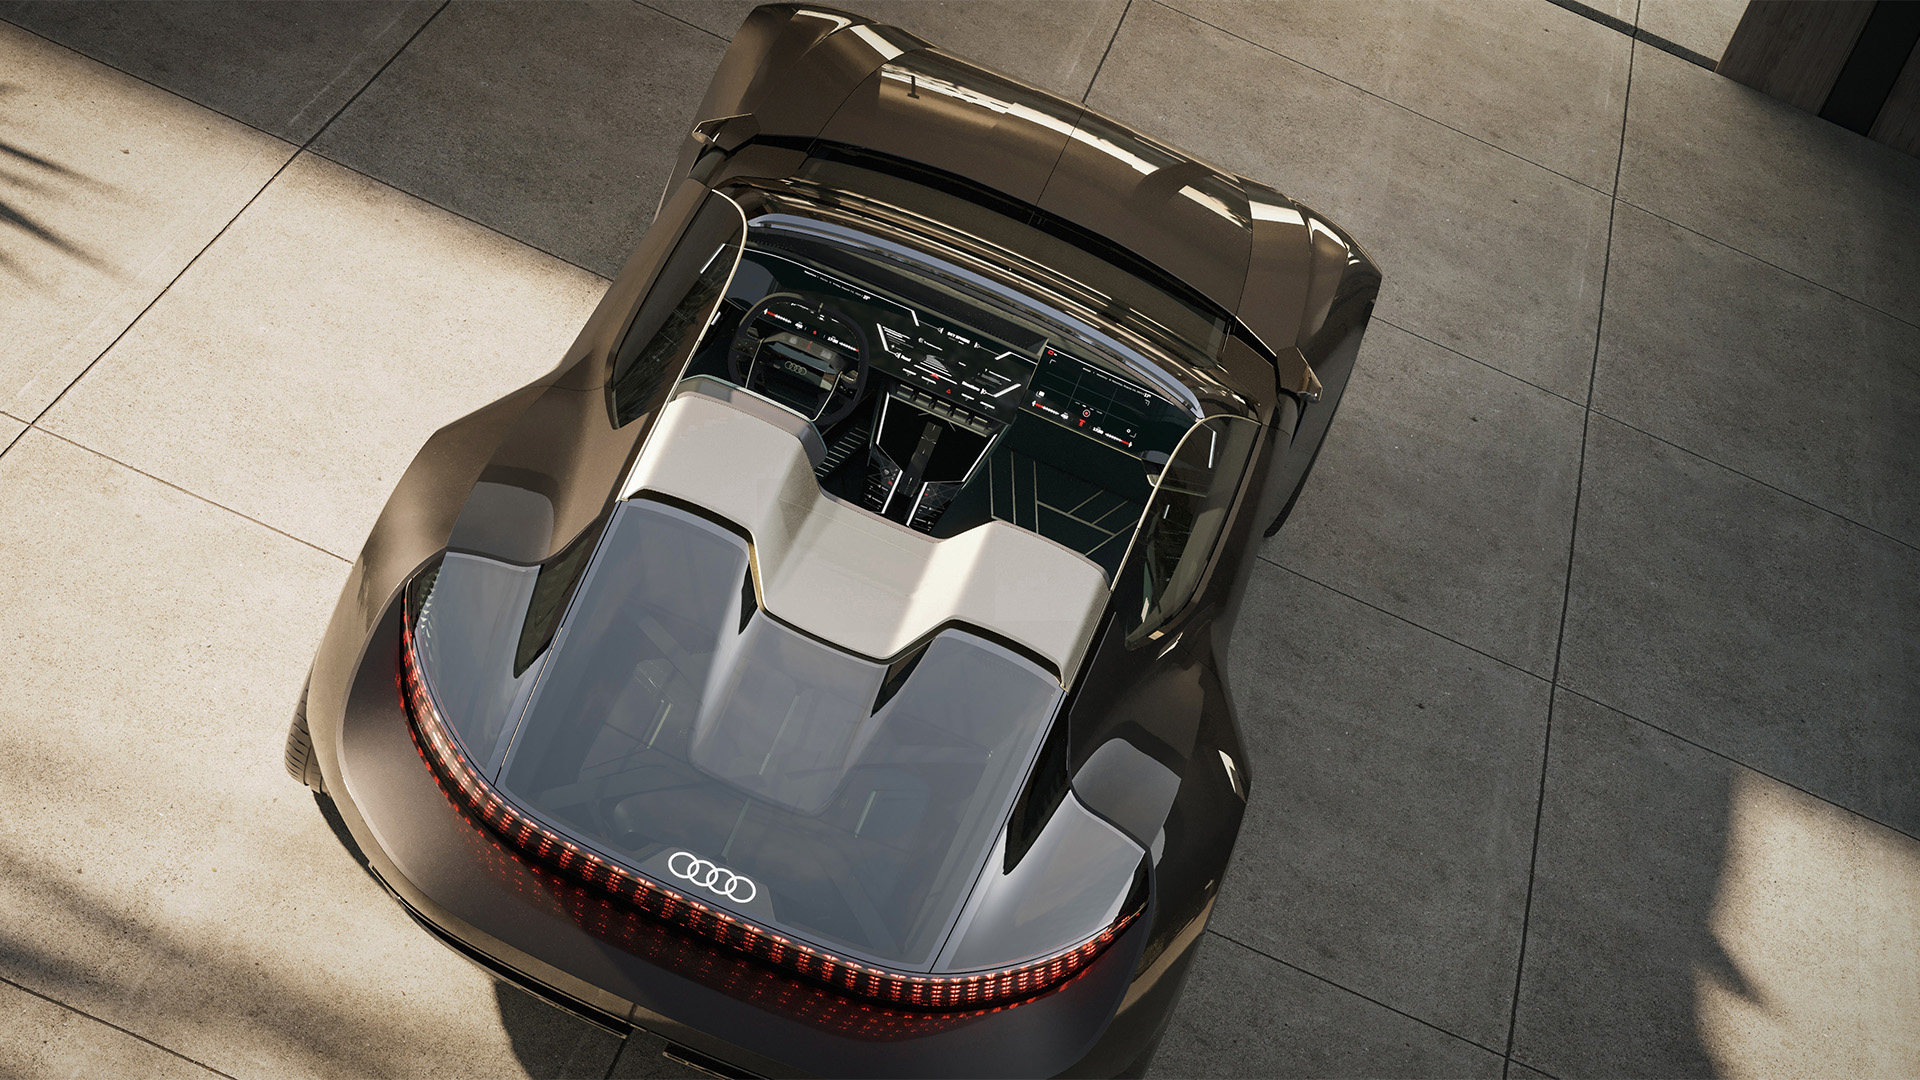 Audi skysphere roadster sett på skrå ovenfra.